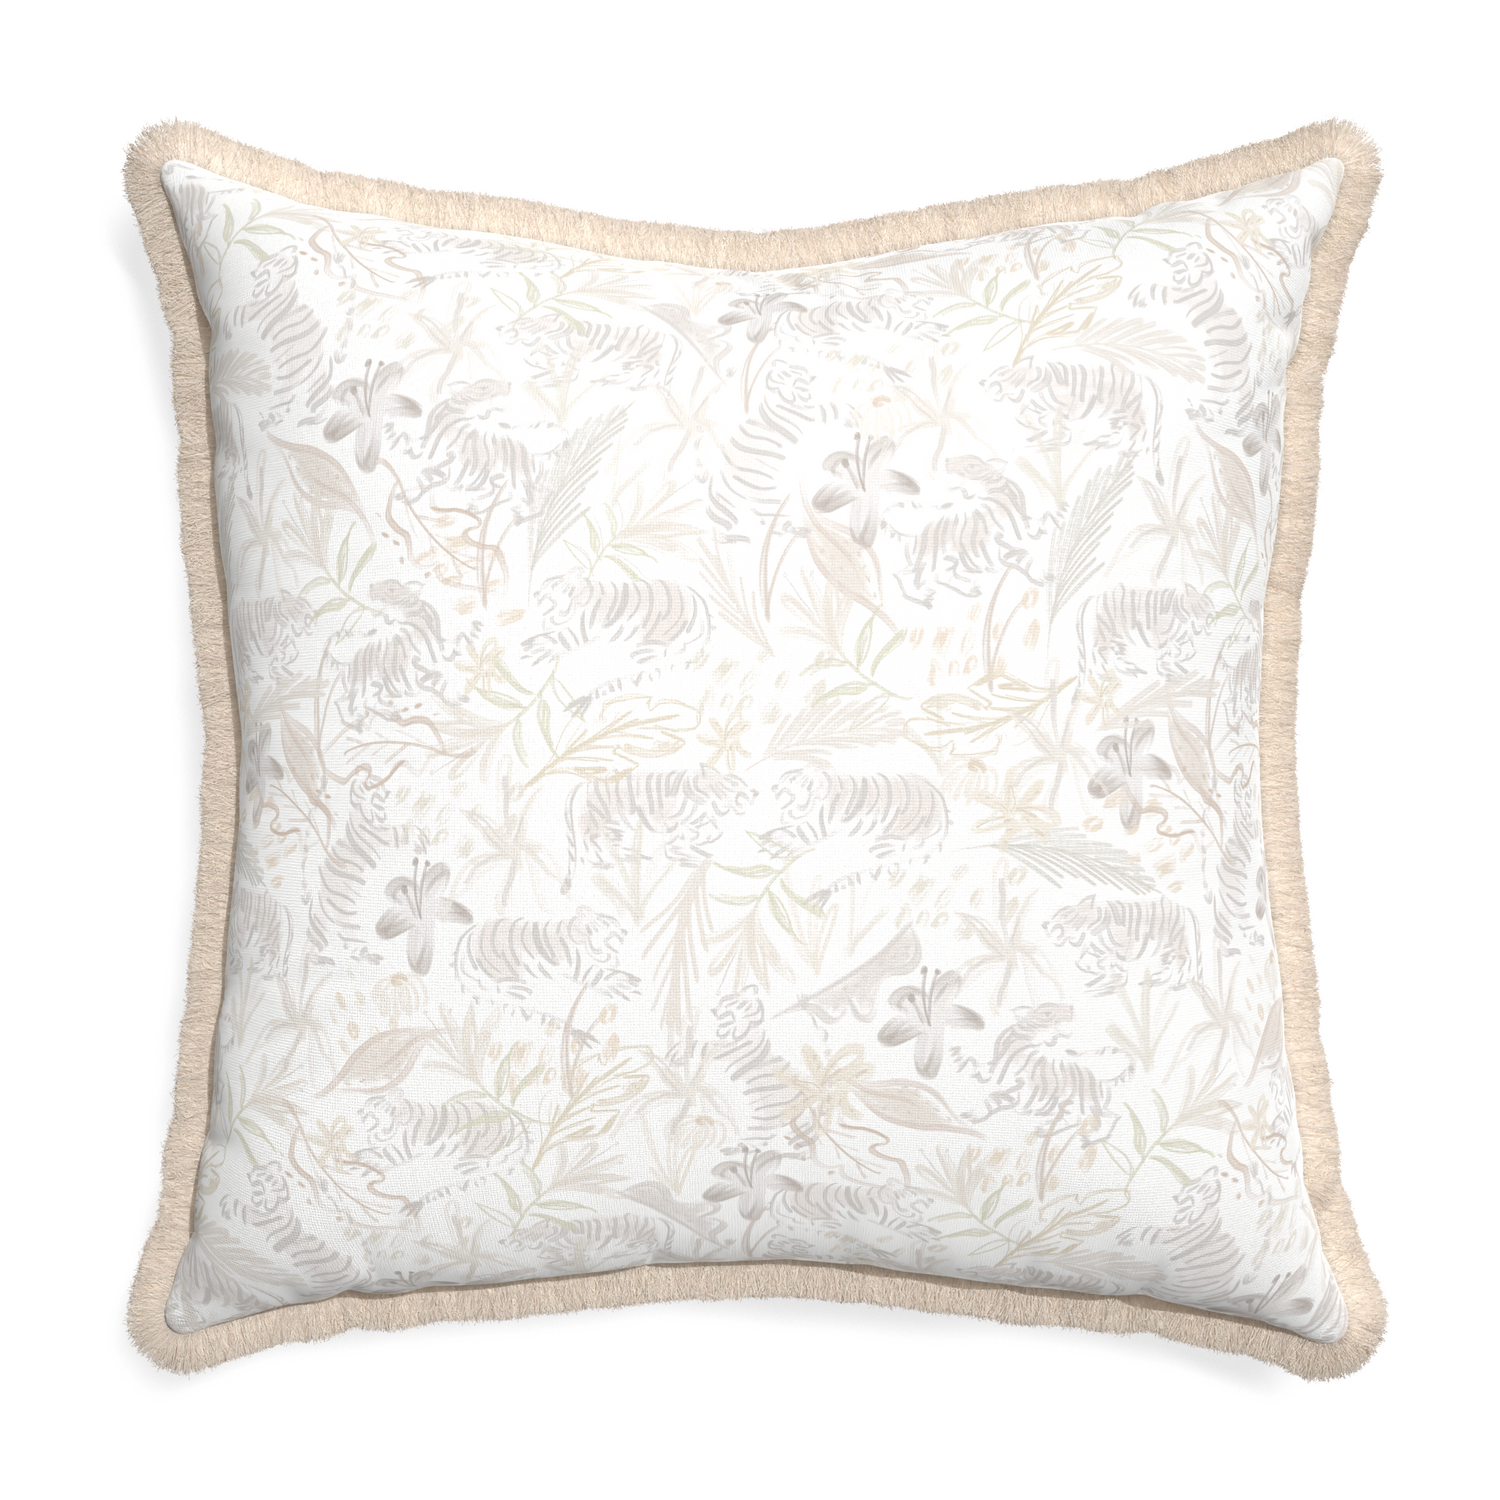 Euro-sham frida sand custom pillow with cream fringe on white background